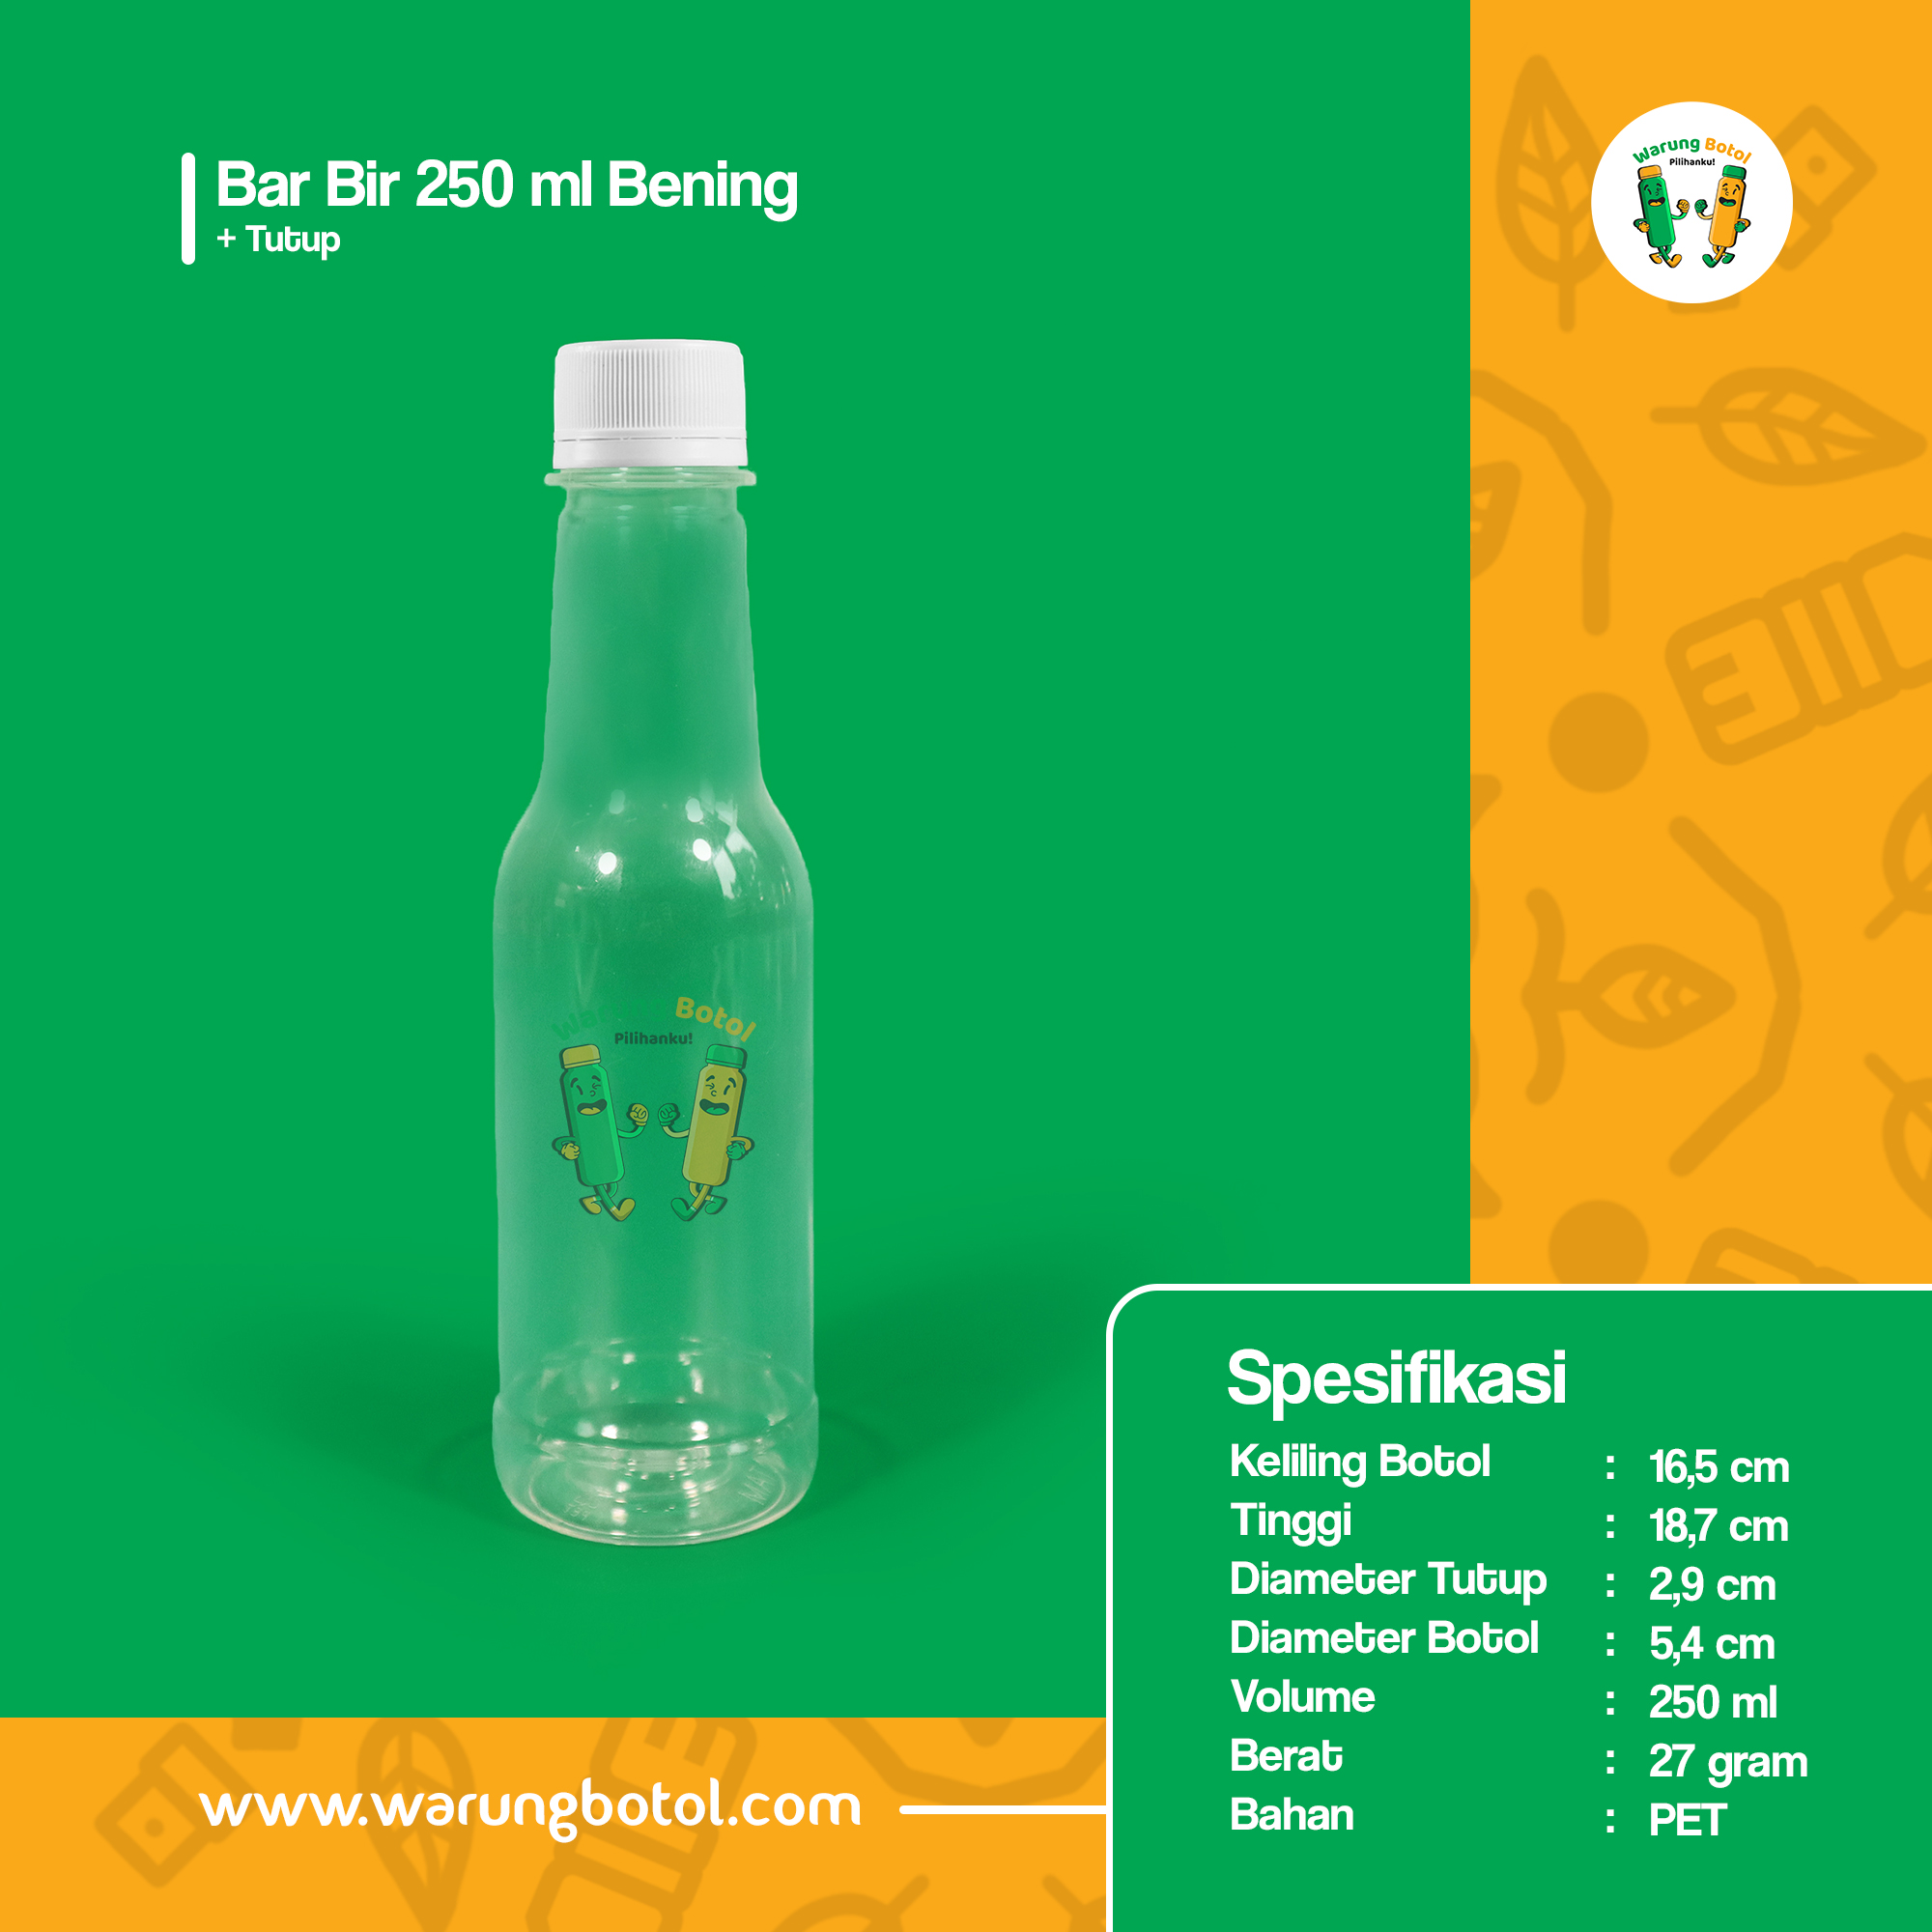 distributor toko jual botol plastik minuman unik 250ml bening murah terdekat di bandung, jakarta, bogor dan bekasi